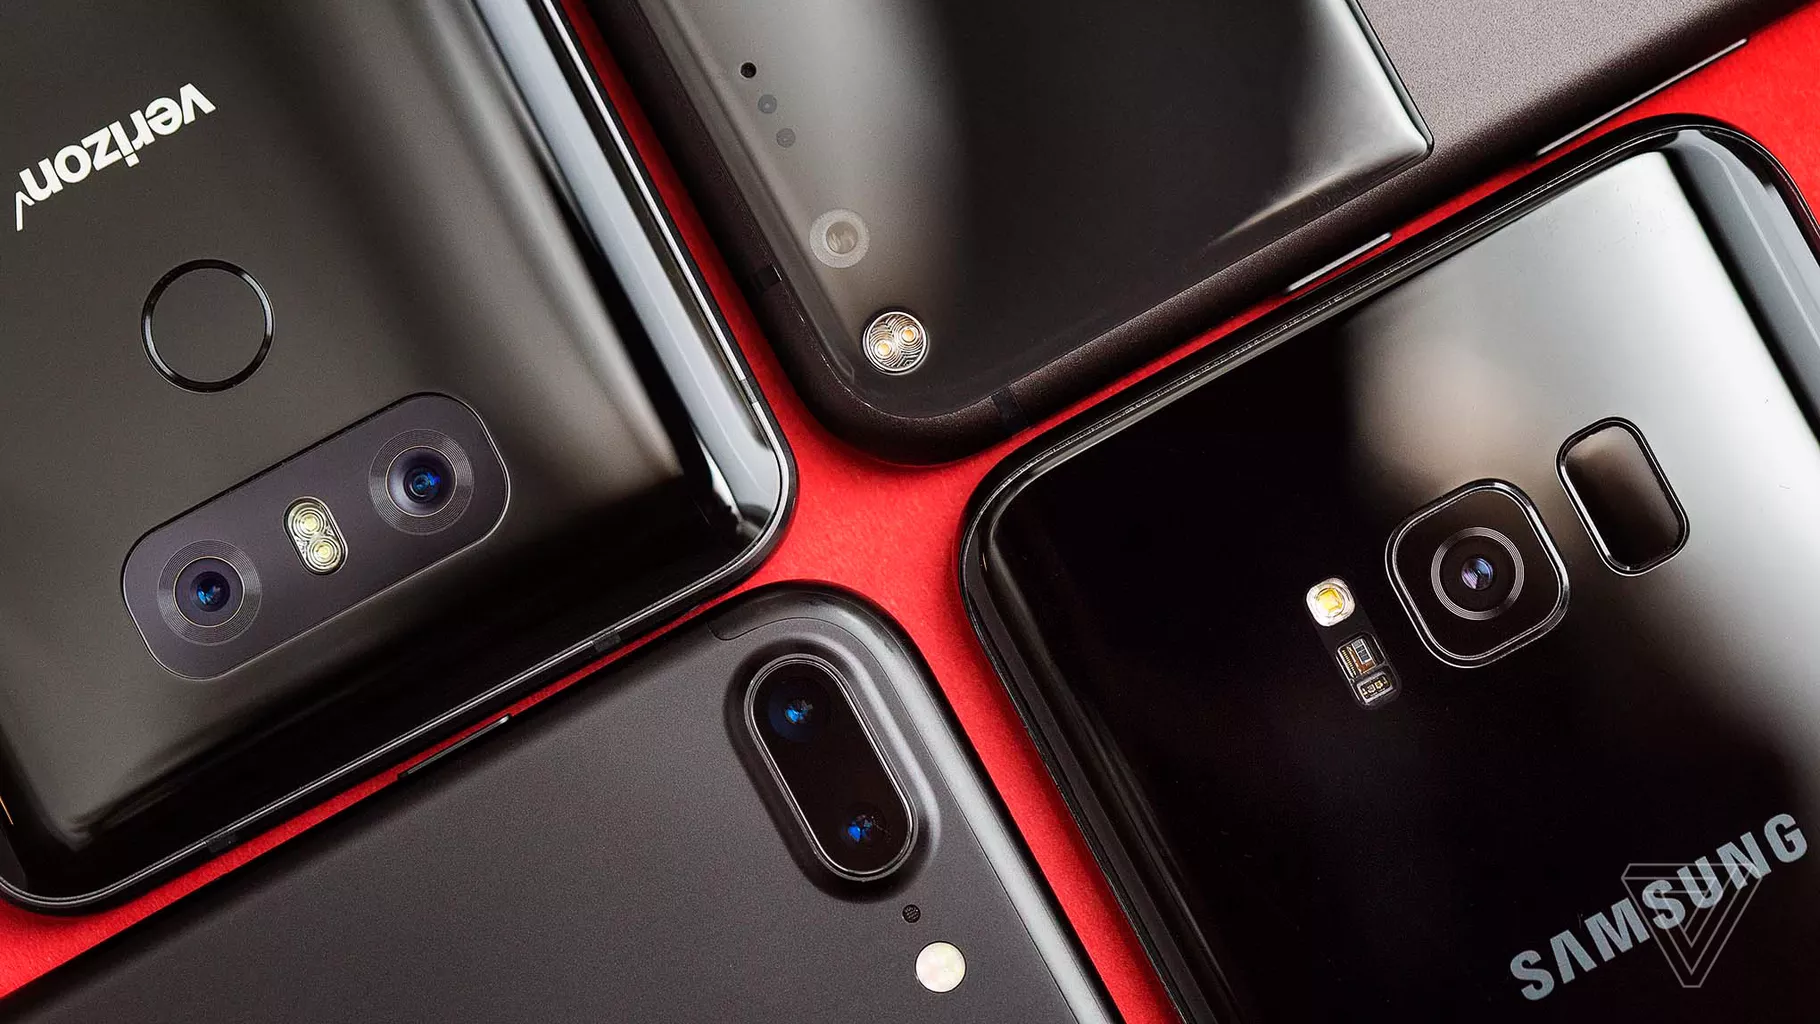 So sánh chất lượng camera: Galaxy S8 với iPhone 7, Google Pixel XL, và LG G6